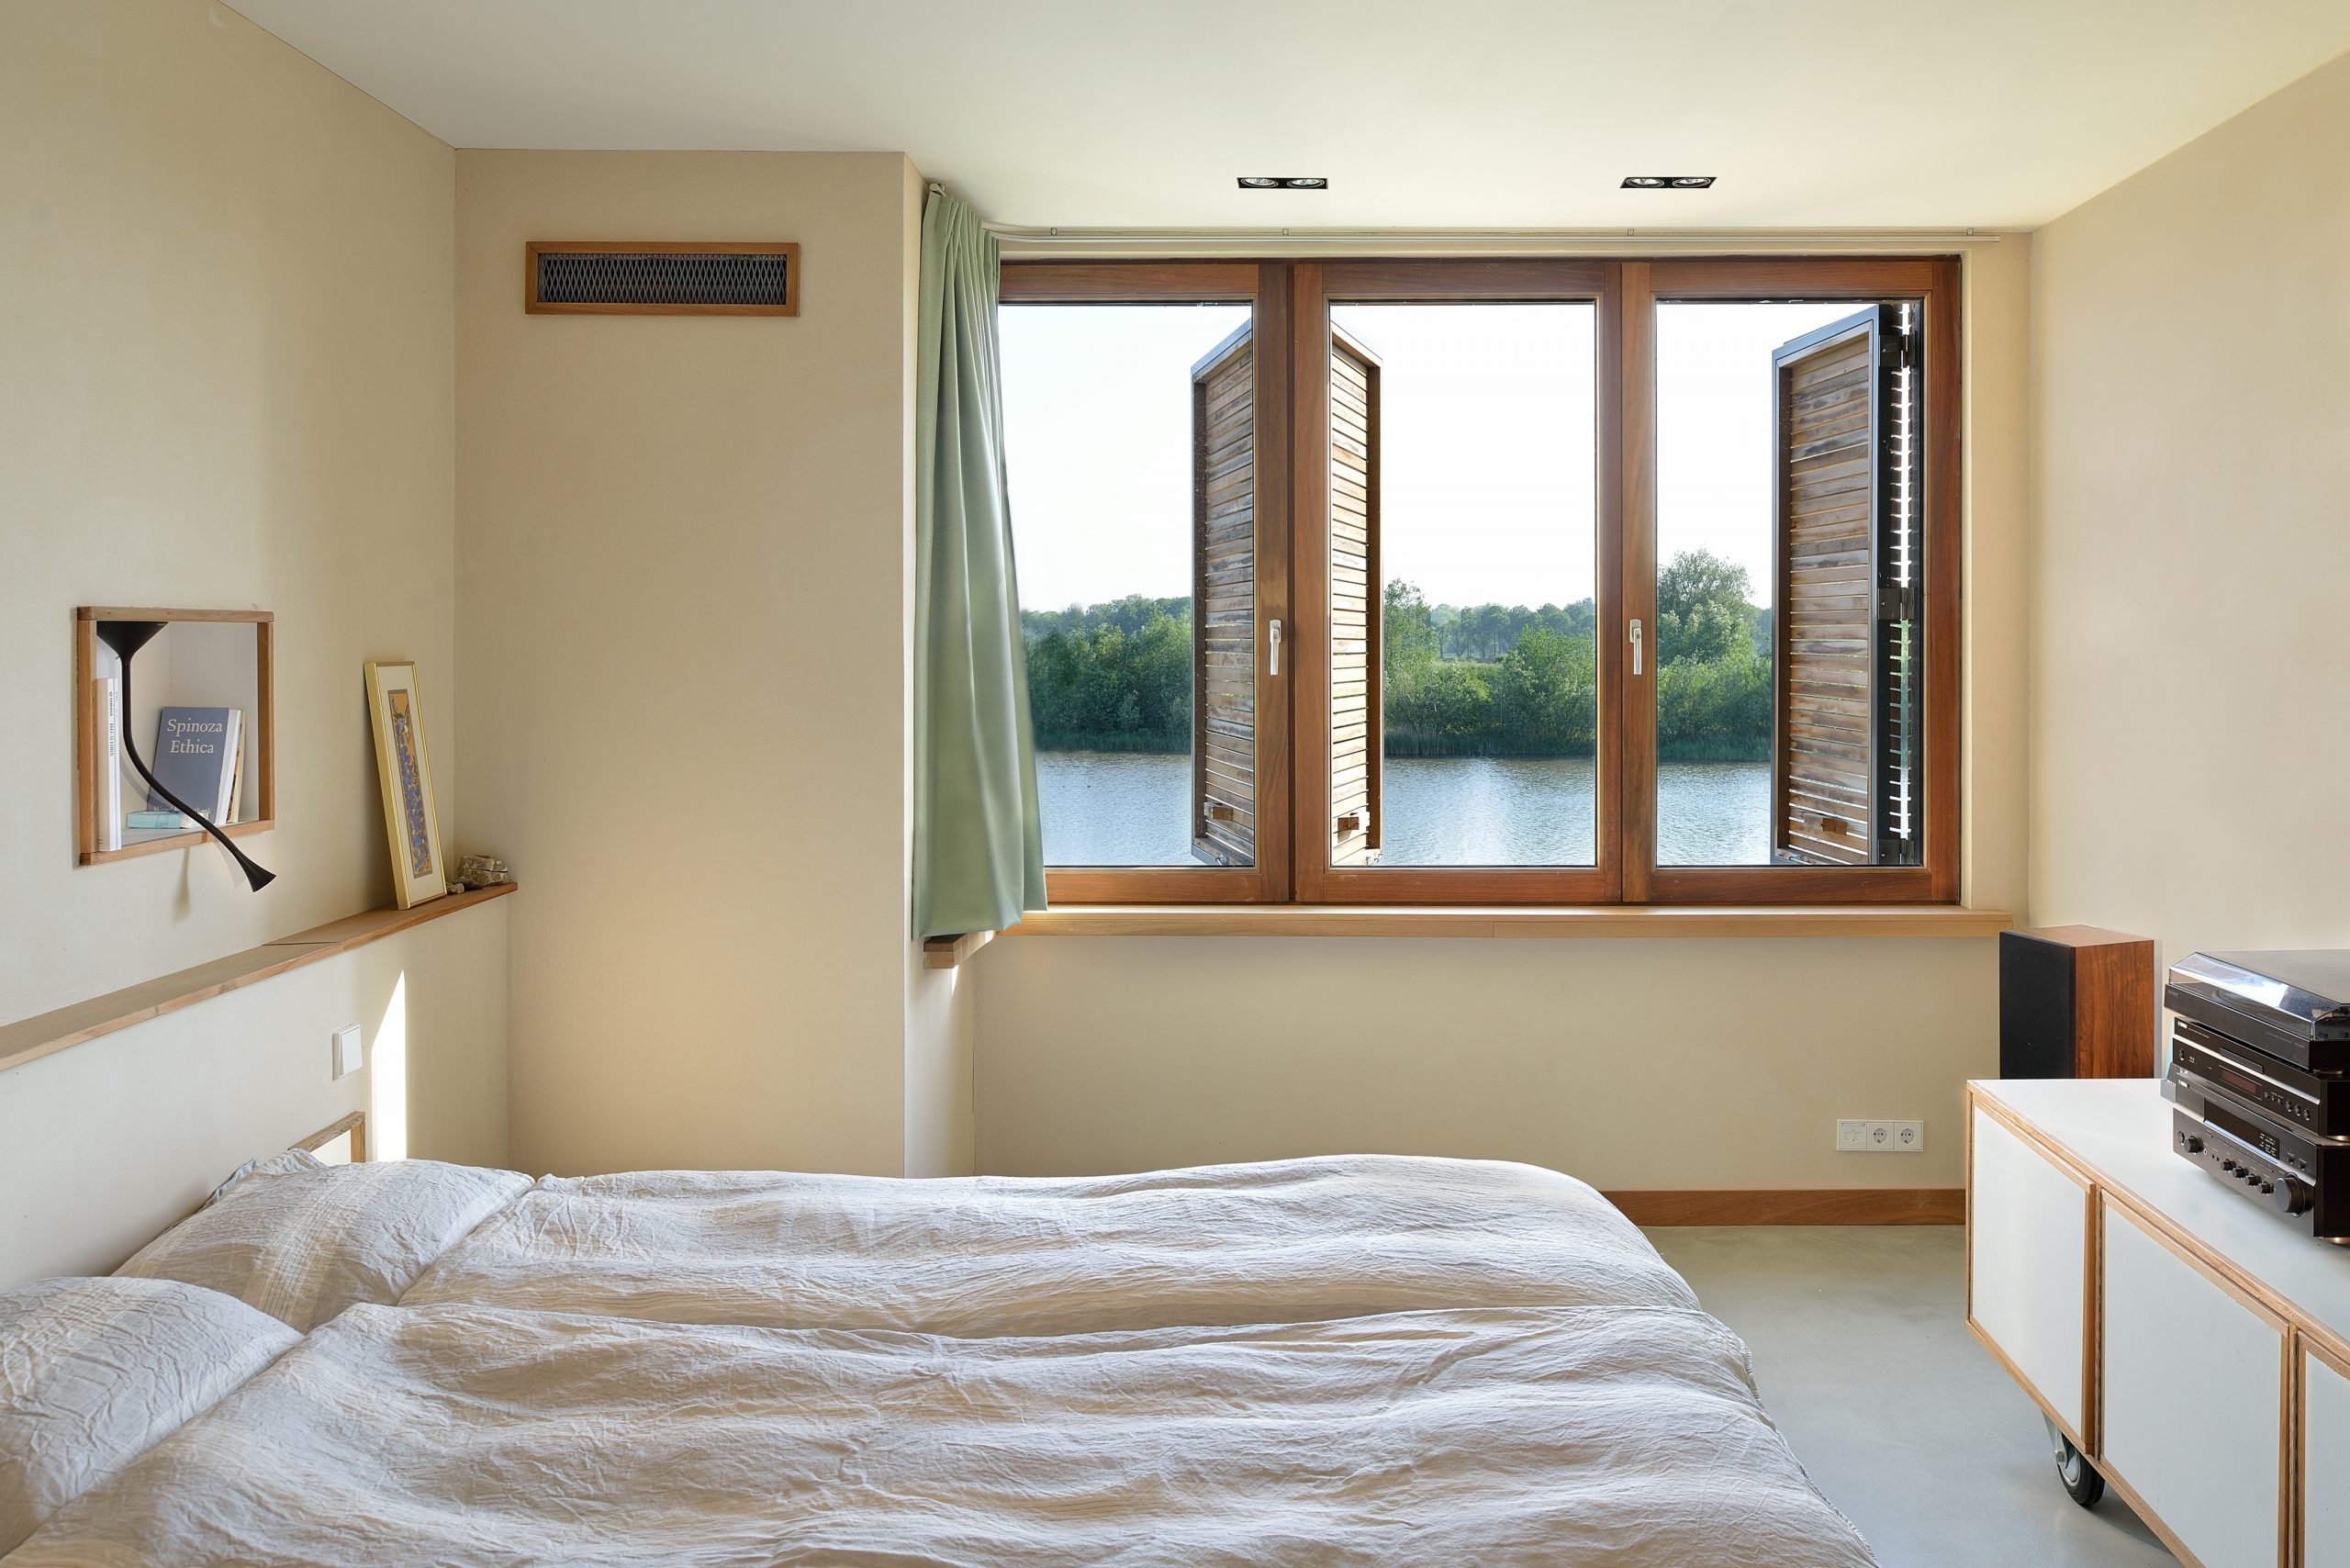 Cửa sổ phòng ngủ được bố trí một cách hợp lý hợp phong thủy